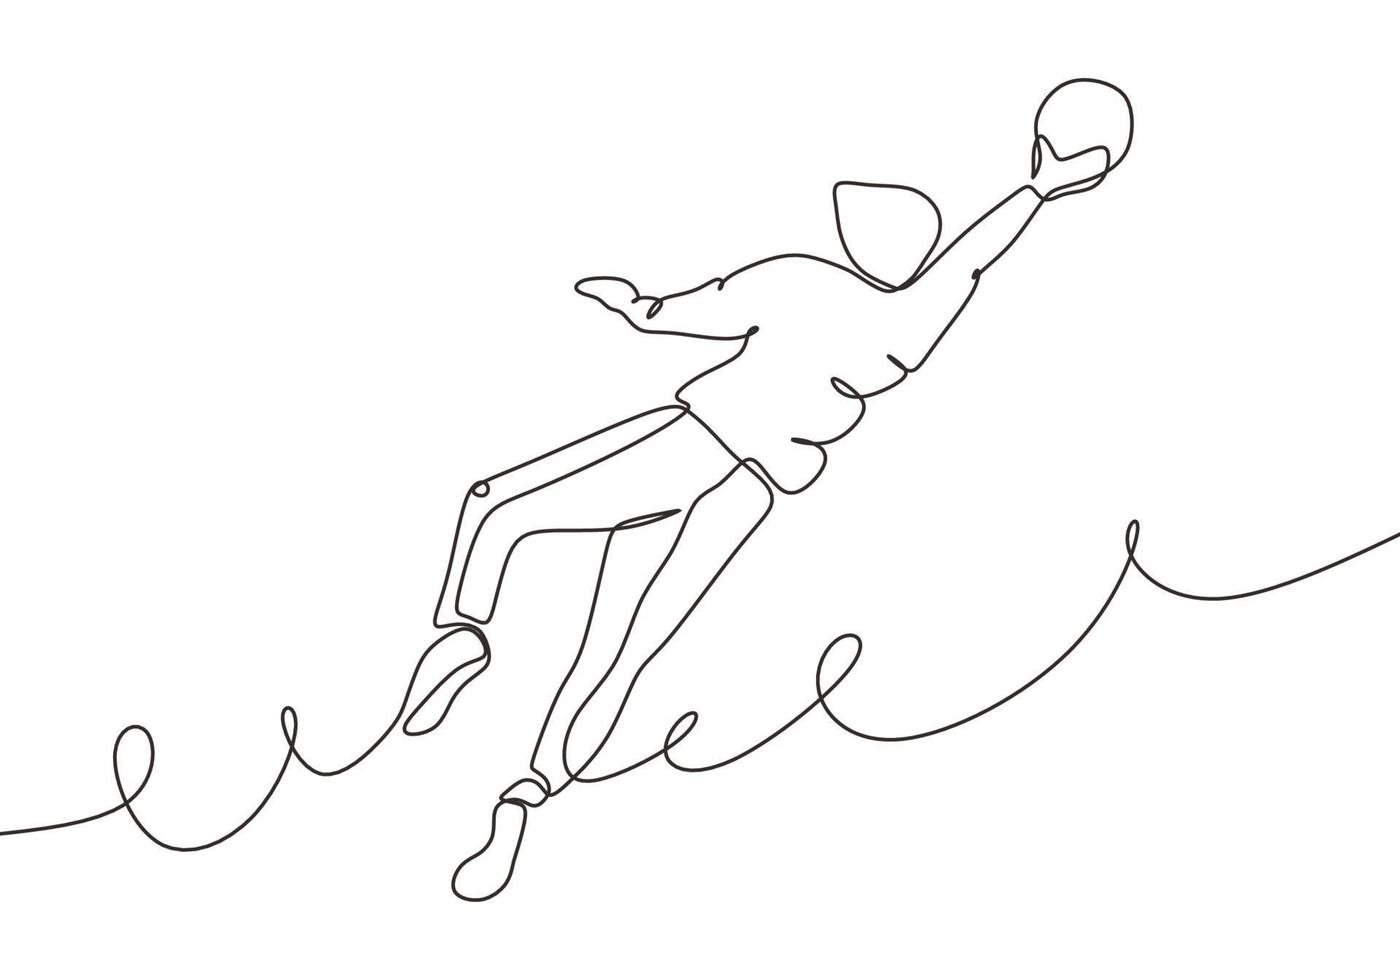 dibujo continuo de una línea del jugador de fútbol saltar y atrapar la pelota vector